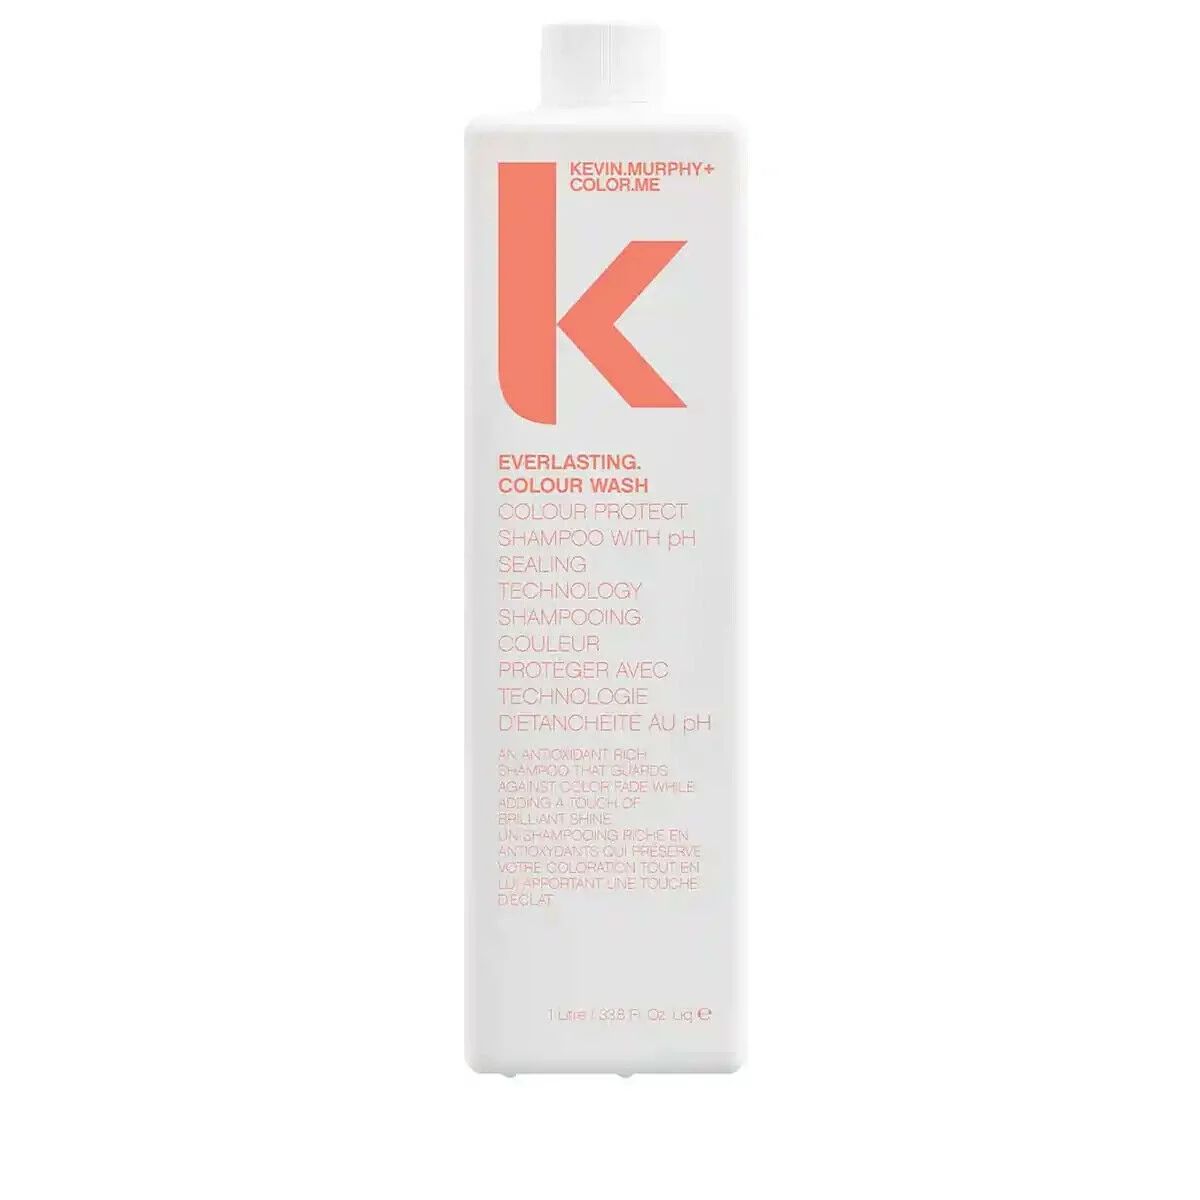 Kevin Murphy Everlasting Color Wash Shampoo 1 Liter 33.8oz | Walmart (US)